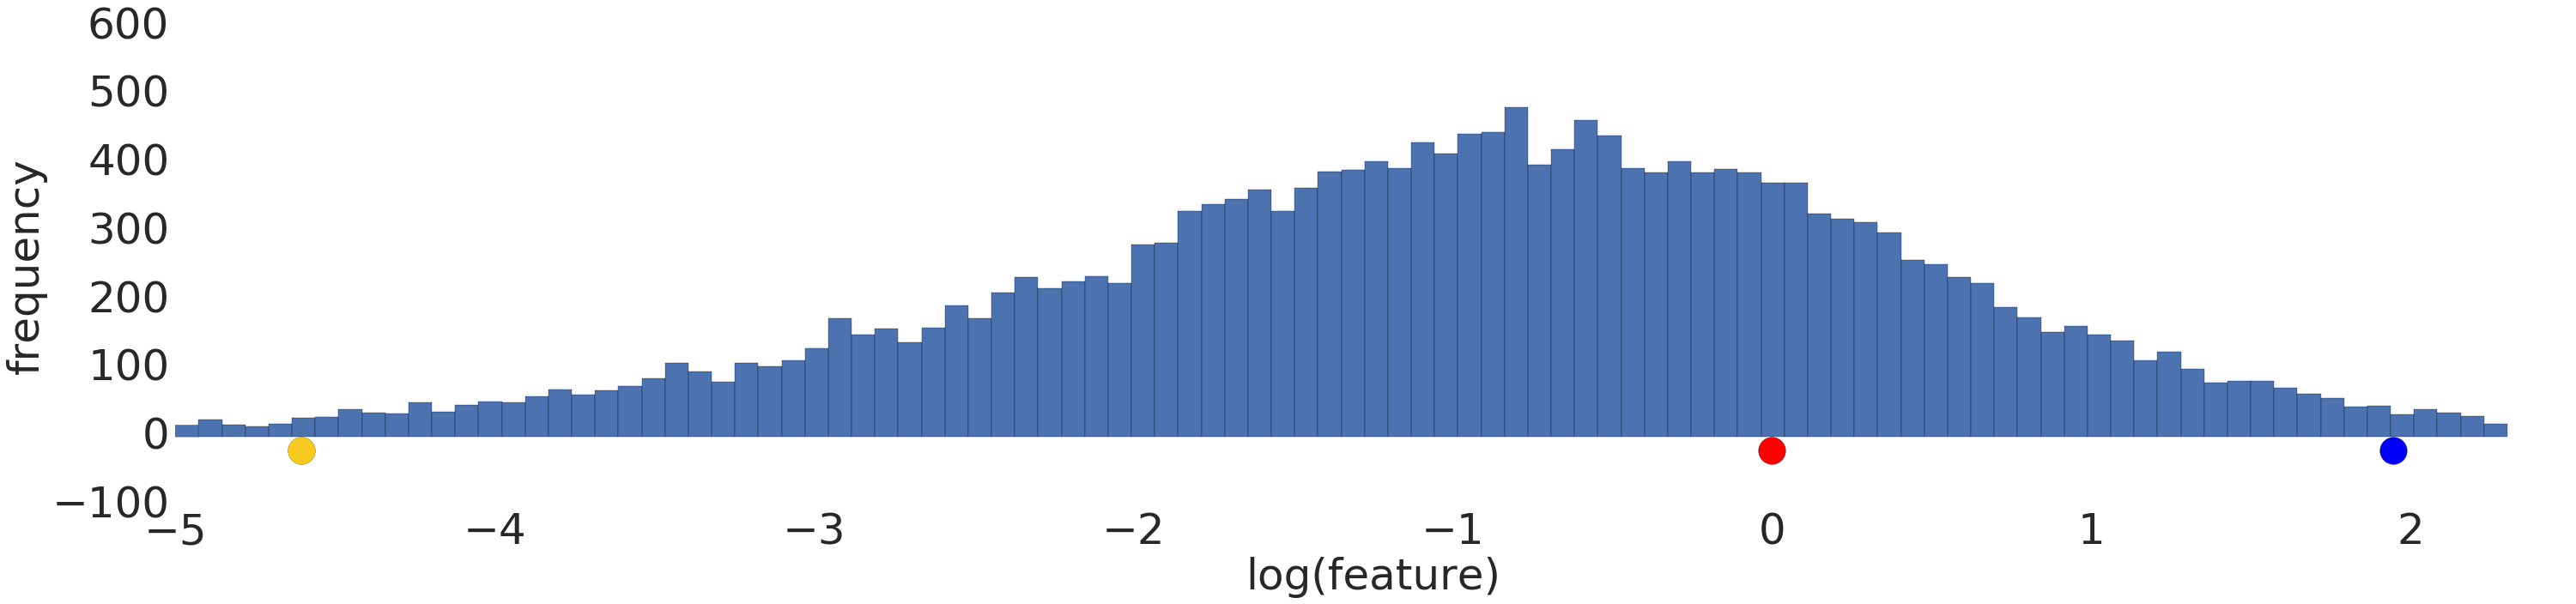 Grafik yang menunjukkan distribusi normal (Gaussia)